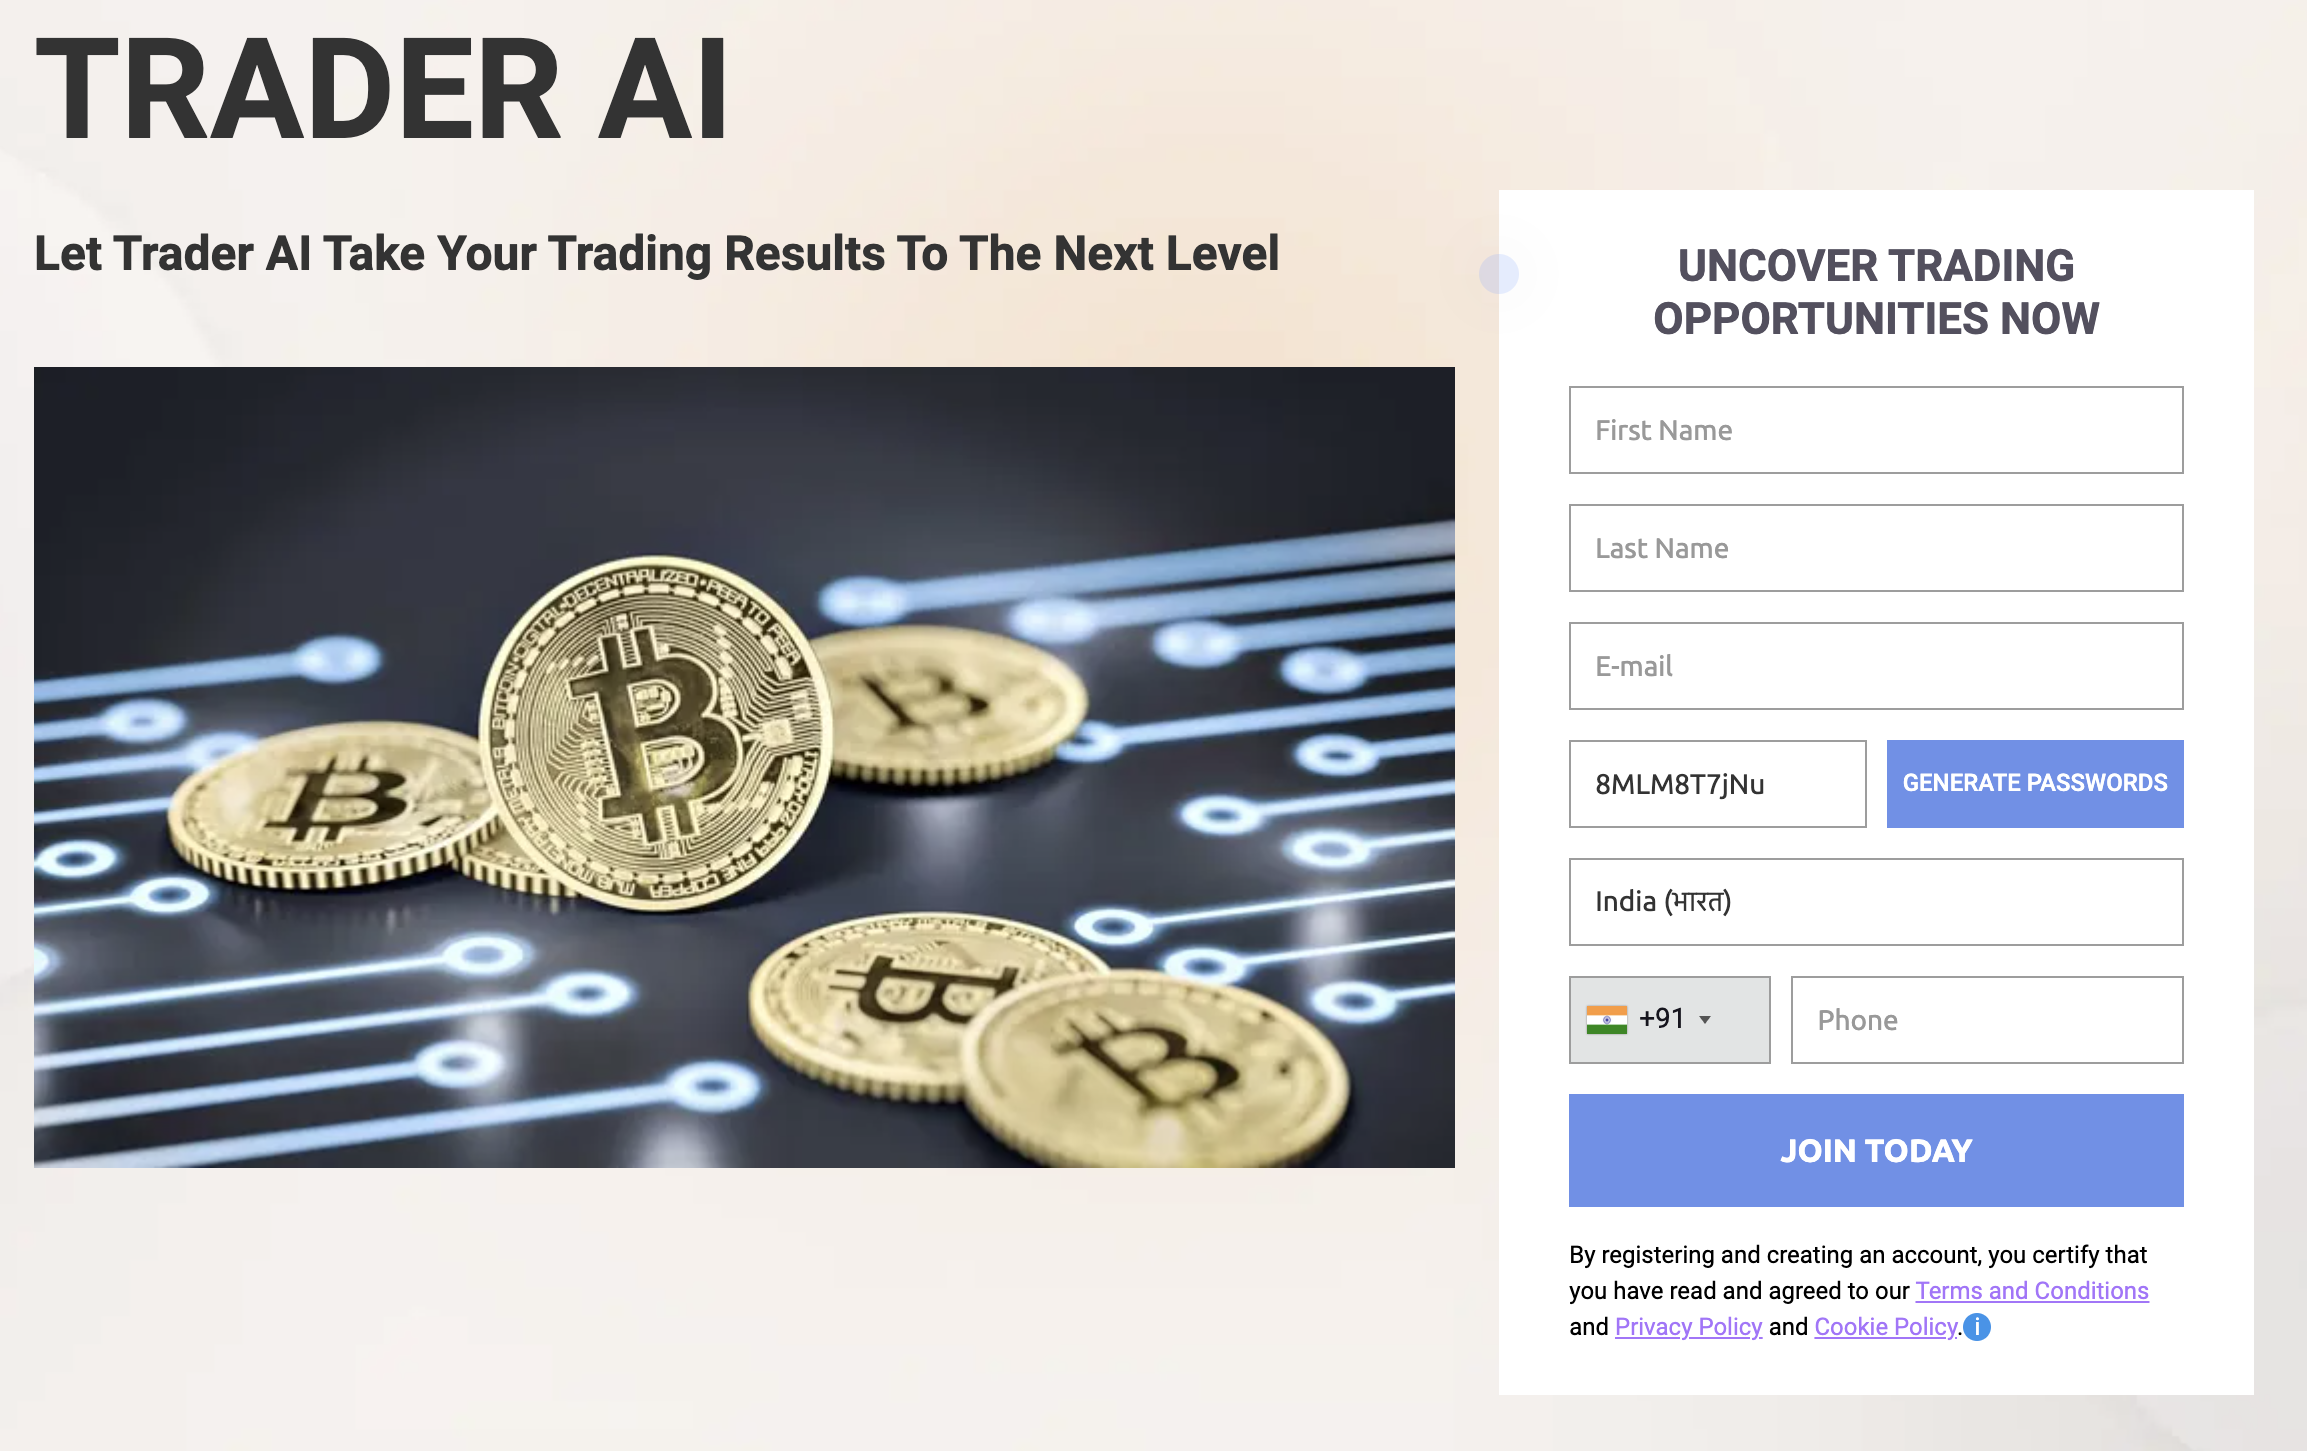 Trader AI Review - Scam or Legitimate Crypto Trading Platform?